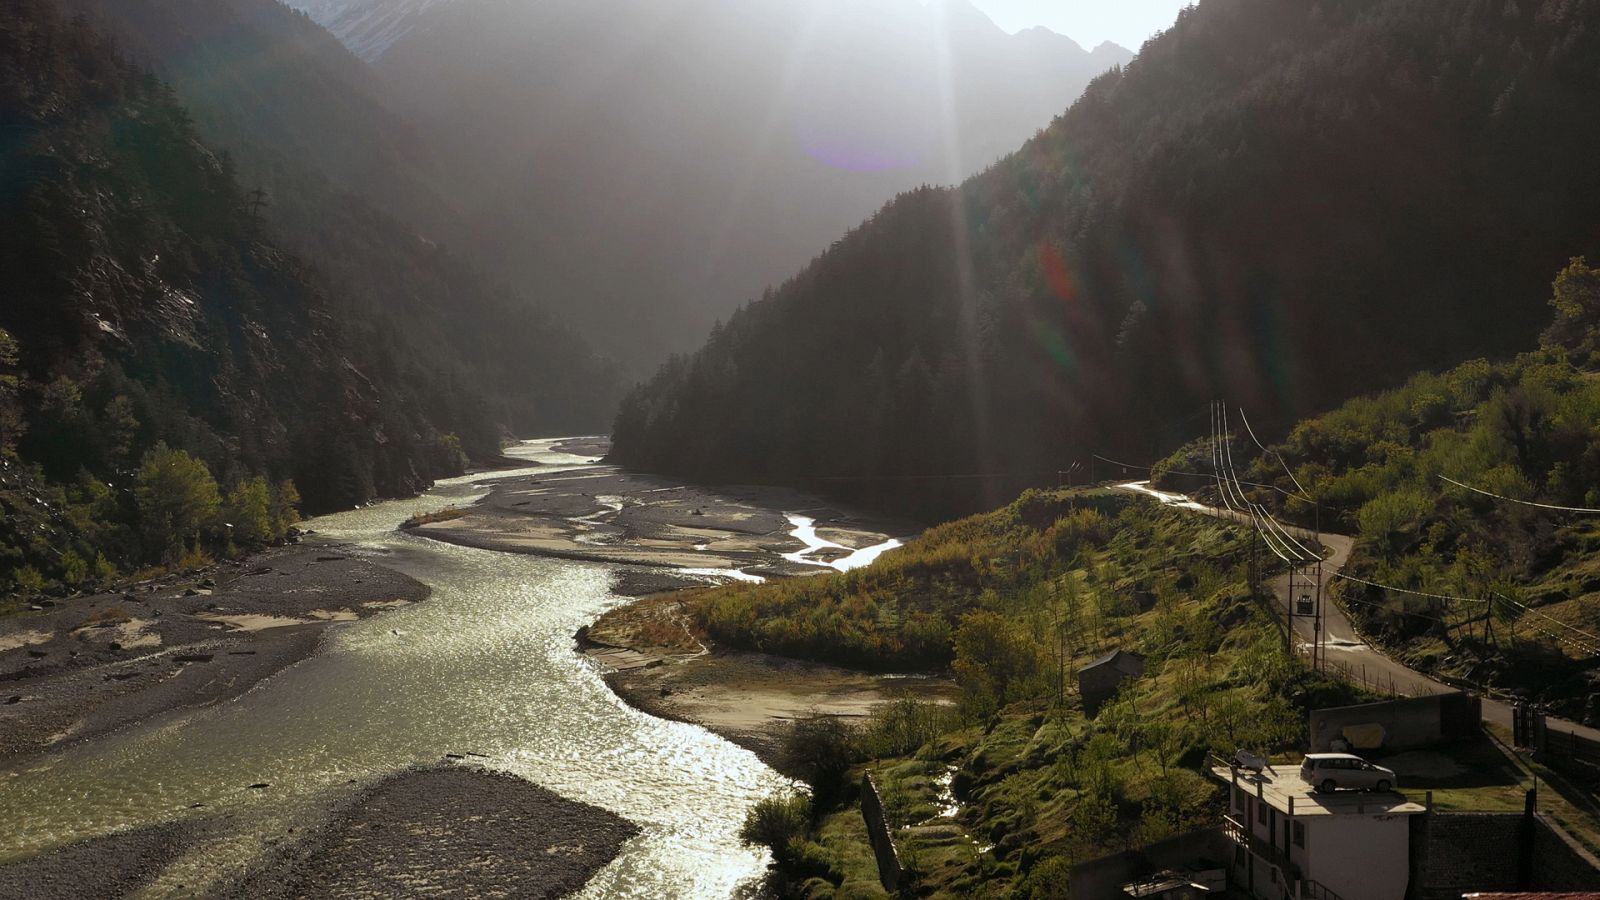 Somos documentales - Uttarakhand: Los orígenes del Ganges - Documental en RTVE